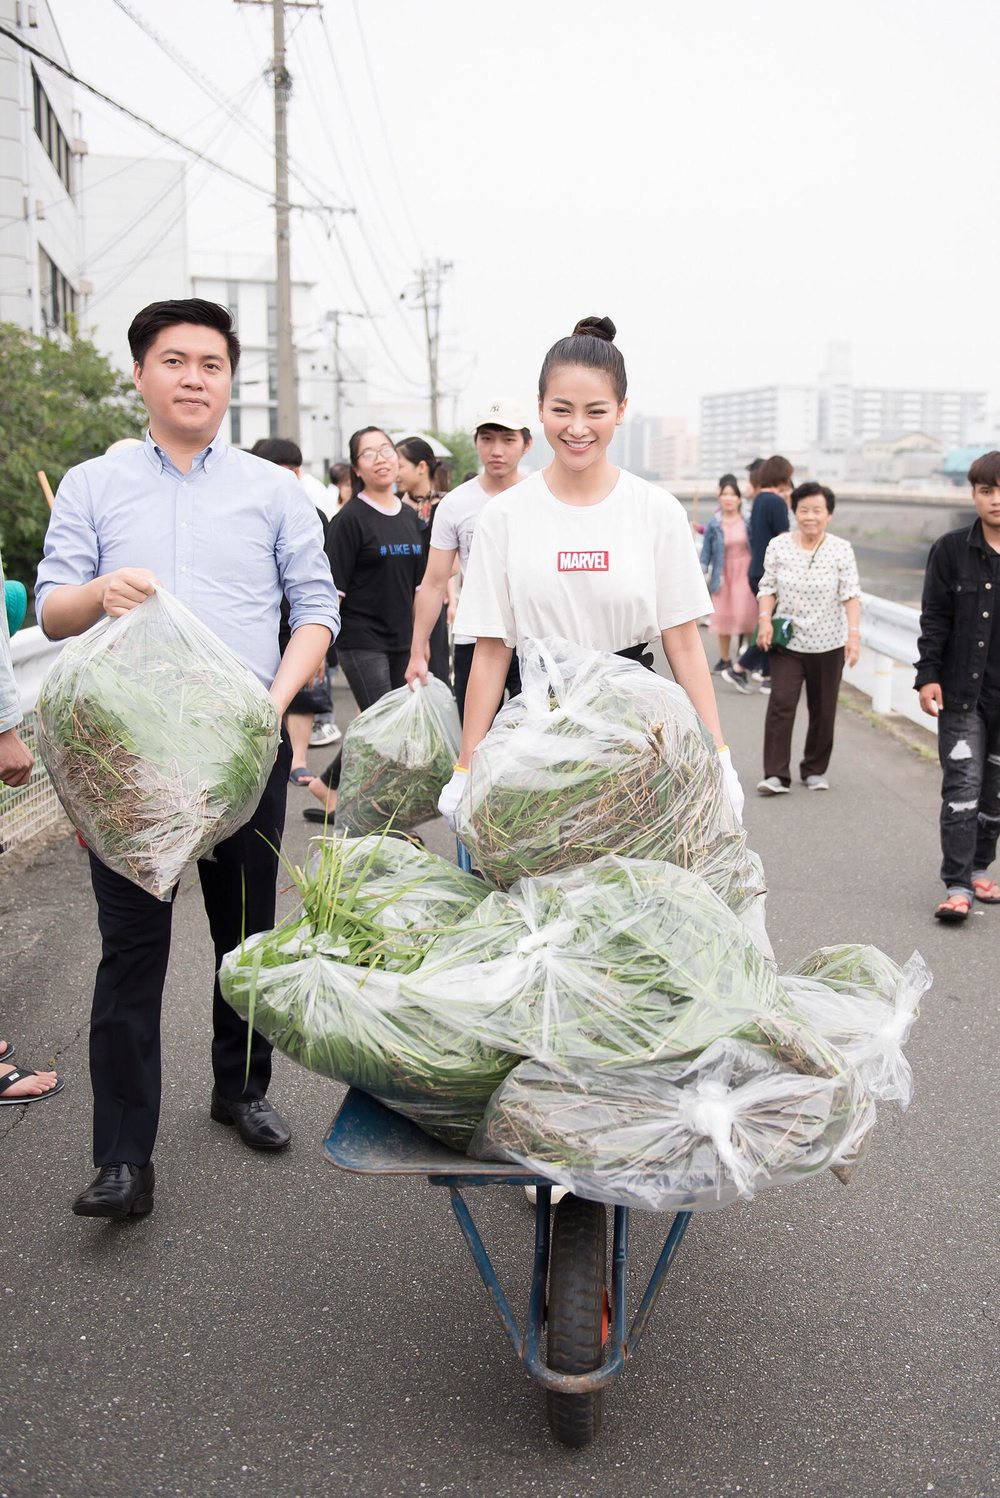 Hoa hậu Phương Khánh diện trang phục đơn giản, đi nhặt rác tại Nhật Bản - Tin sao Viet - Tin tuc sao Viet - Scandal sao Viet - Tin tuc cua Sao - Tin cua Sao